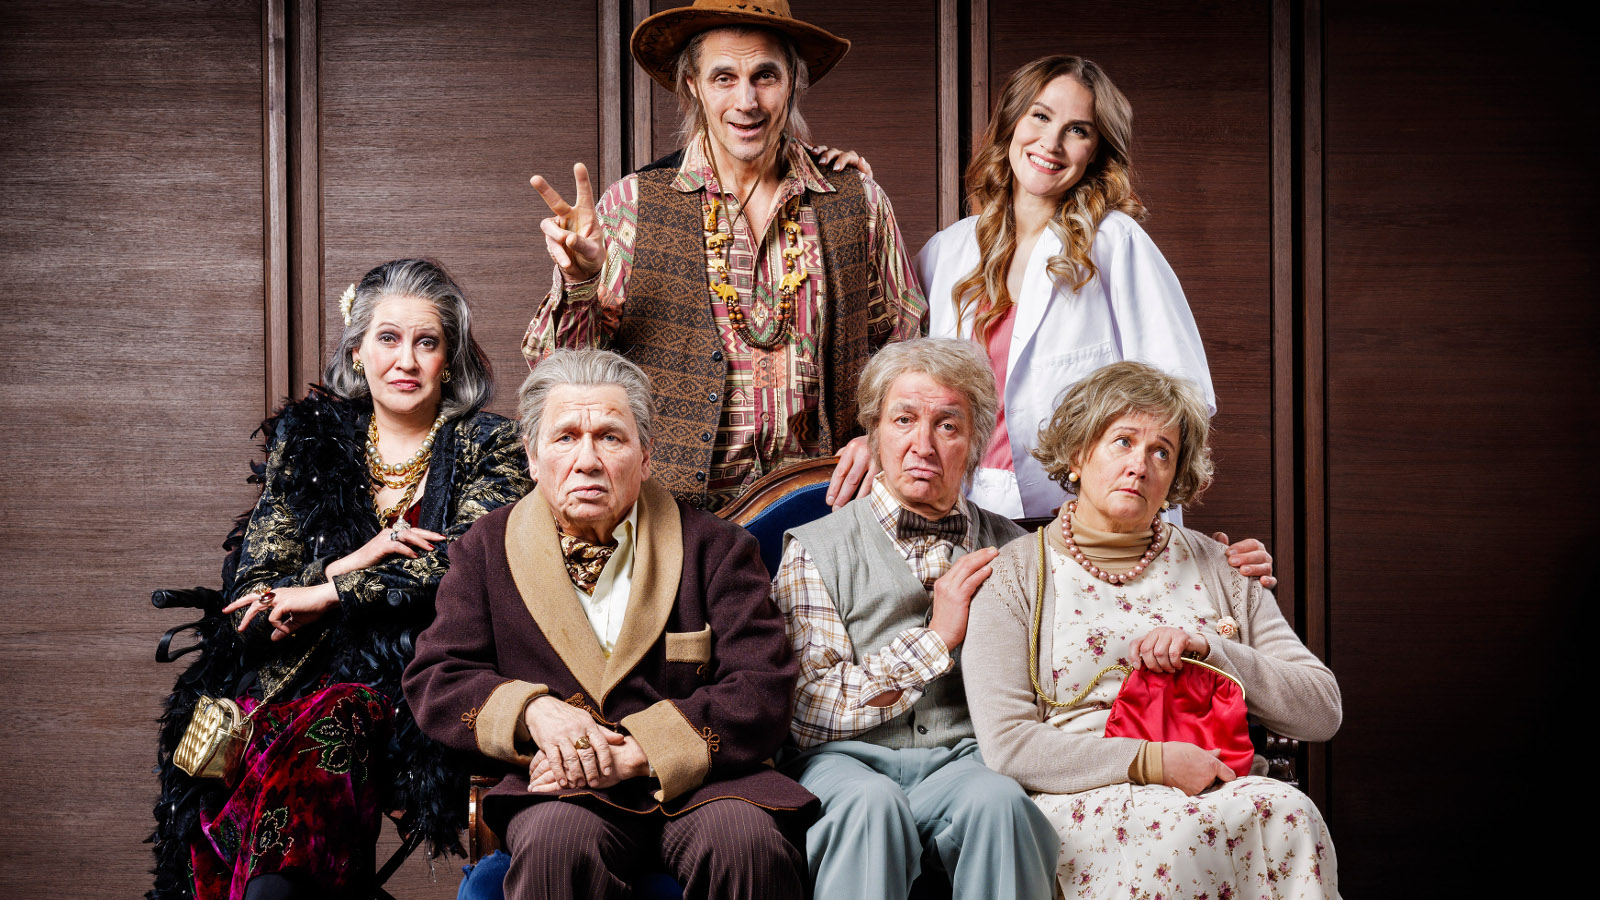 Kuvassa on neljä näyttelijää alarivissä istumassa ja kaksi ylärivissä seisomassa. He ovat vanhojen ihmisten vaatteissa.